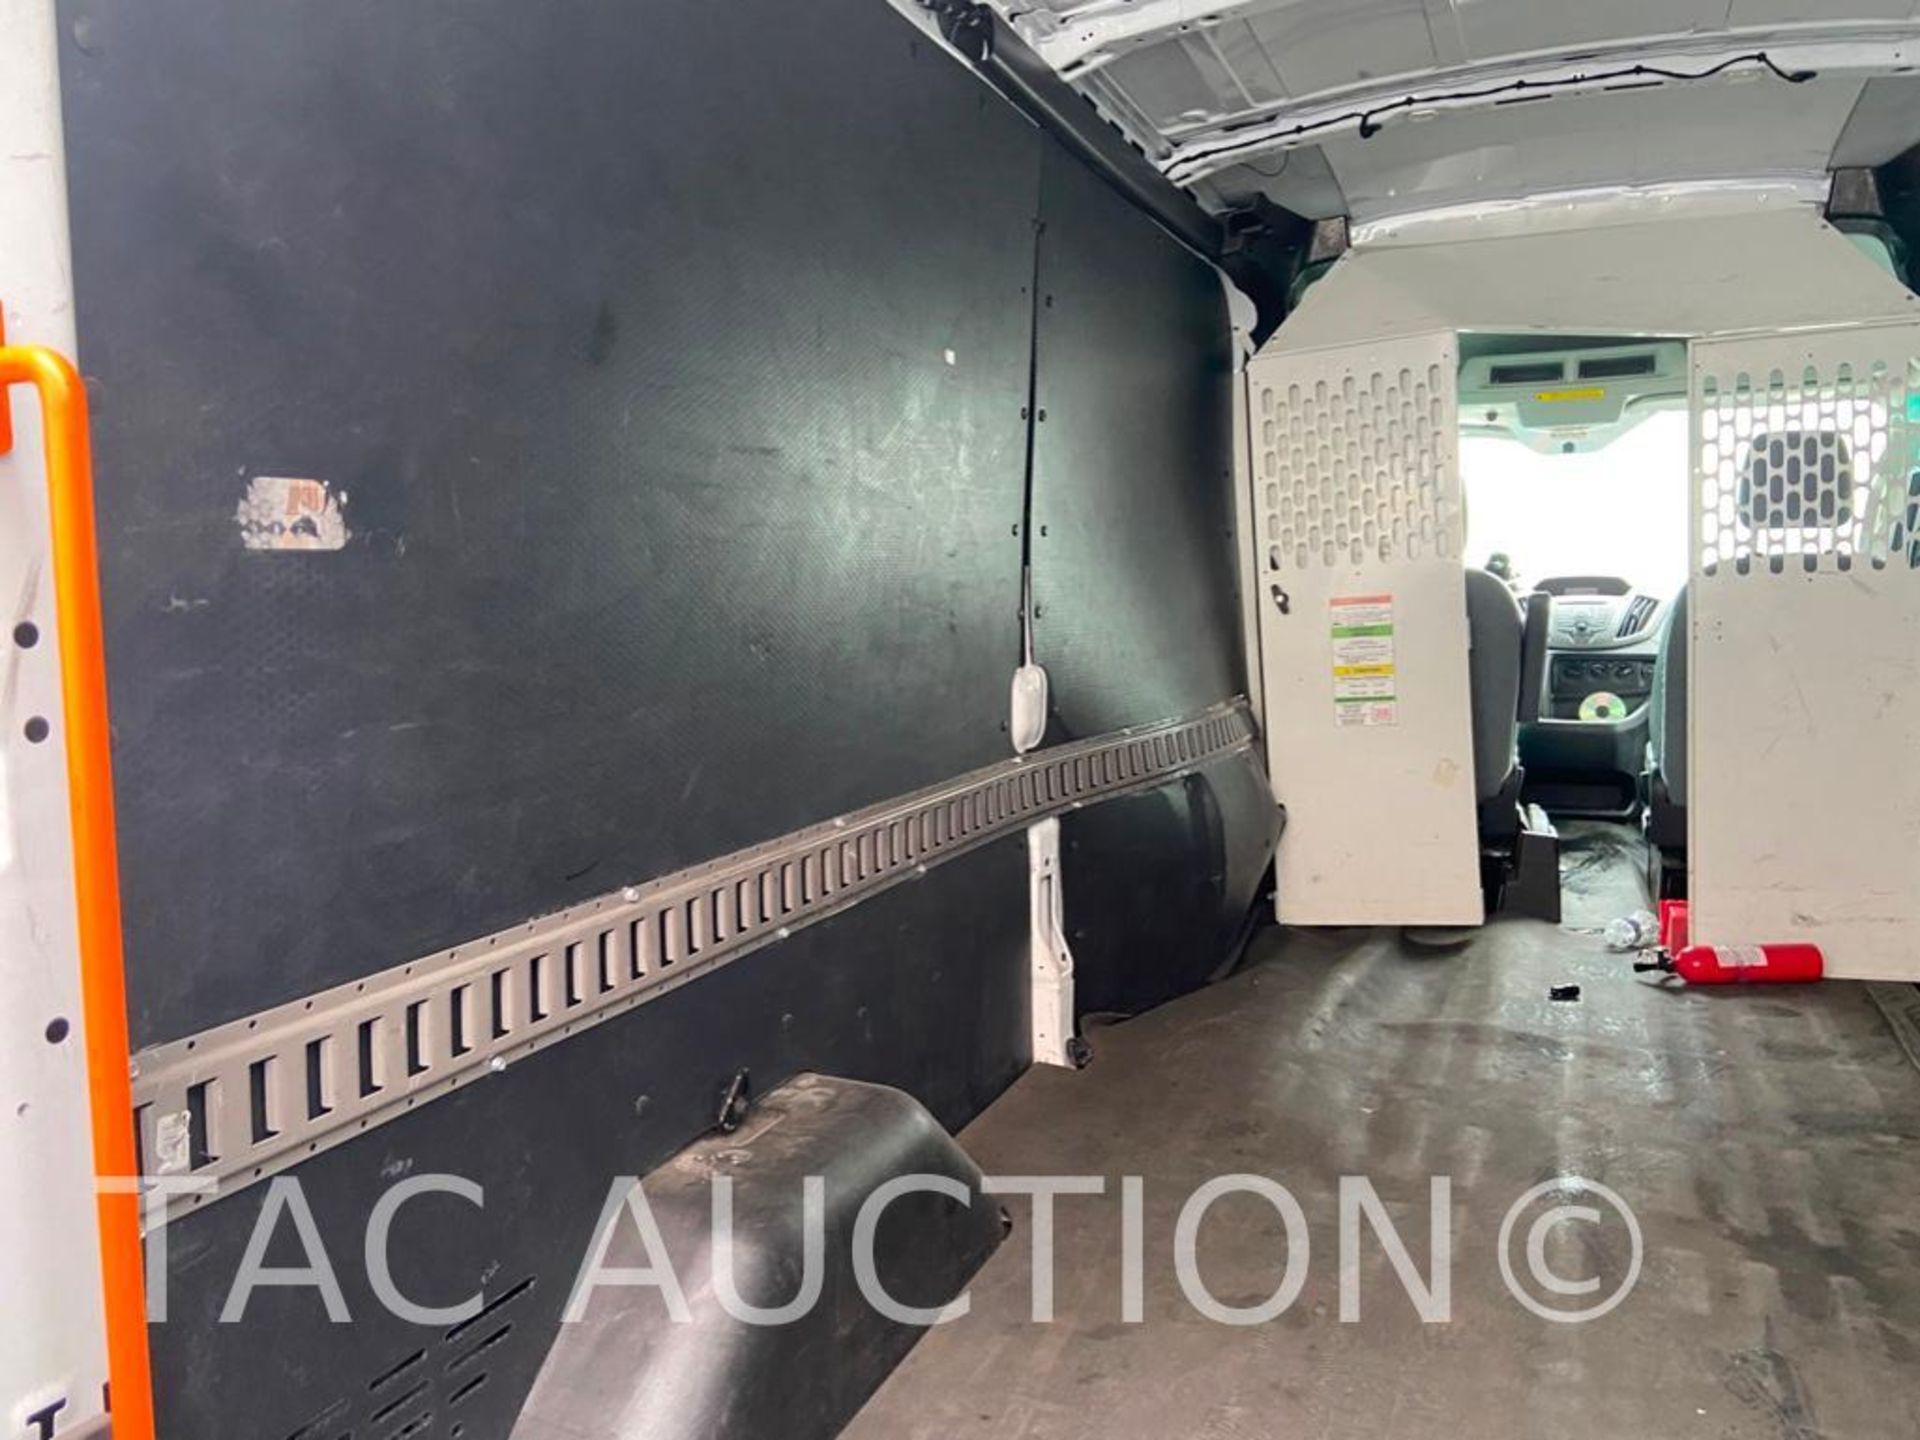 2019 Ford Transit 150 Cargo Van - Image 55 of 80